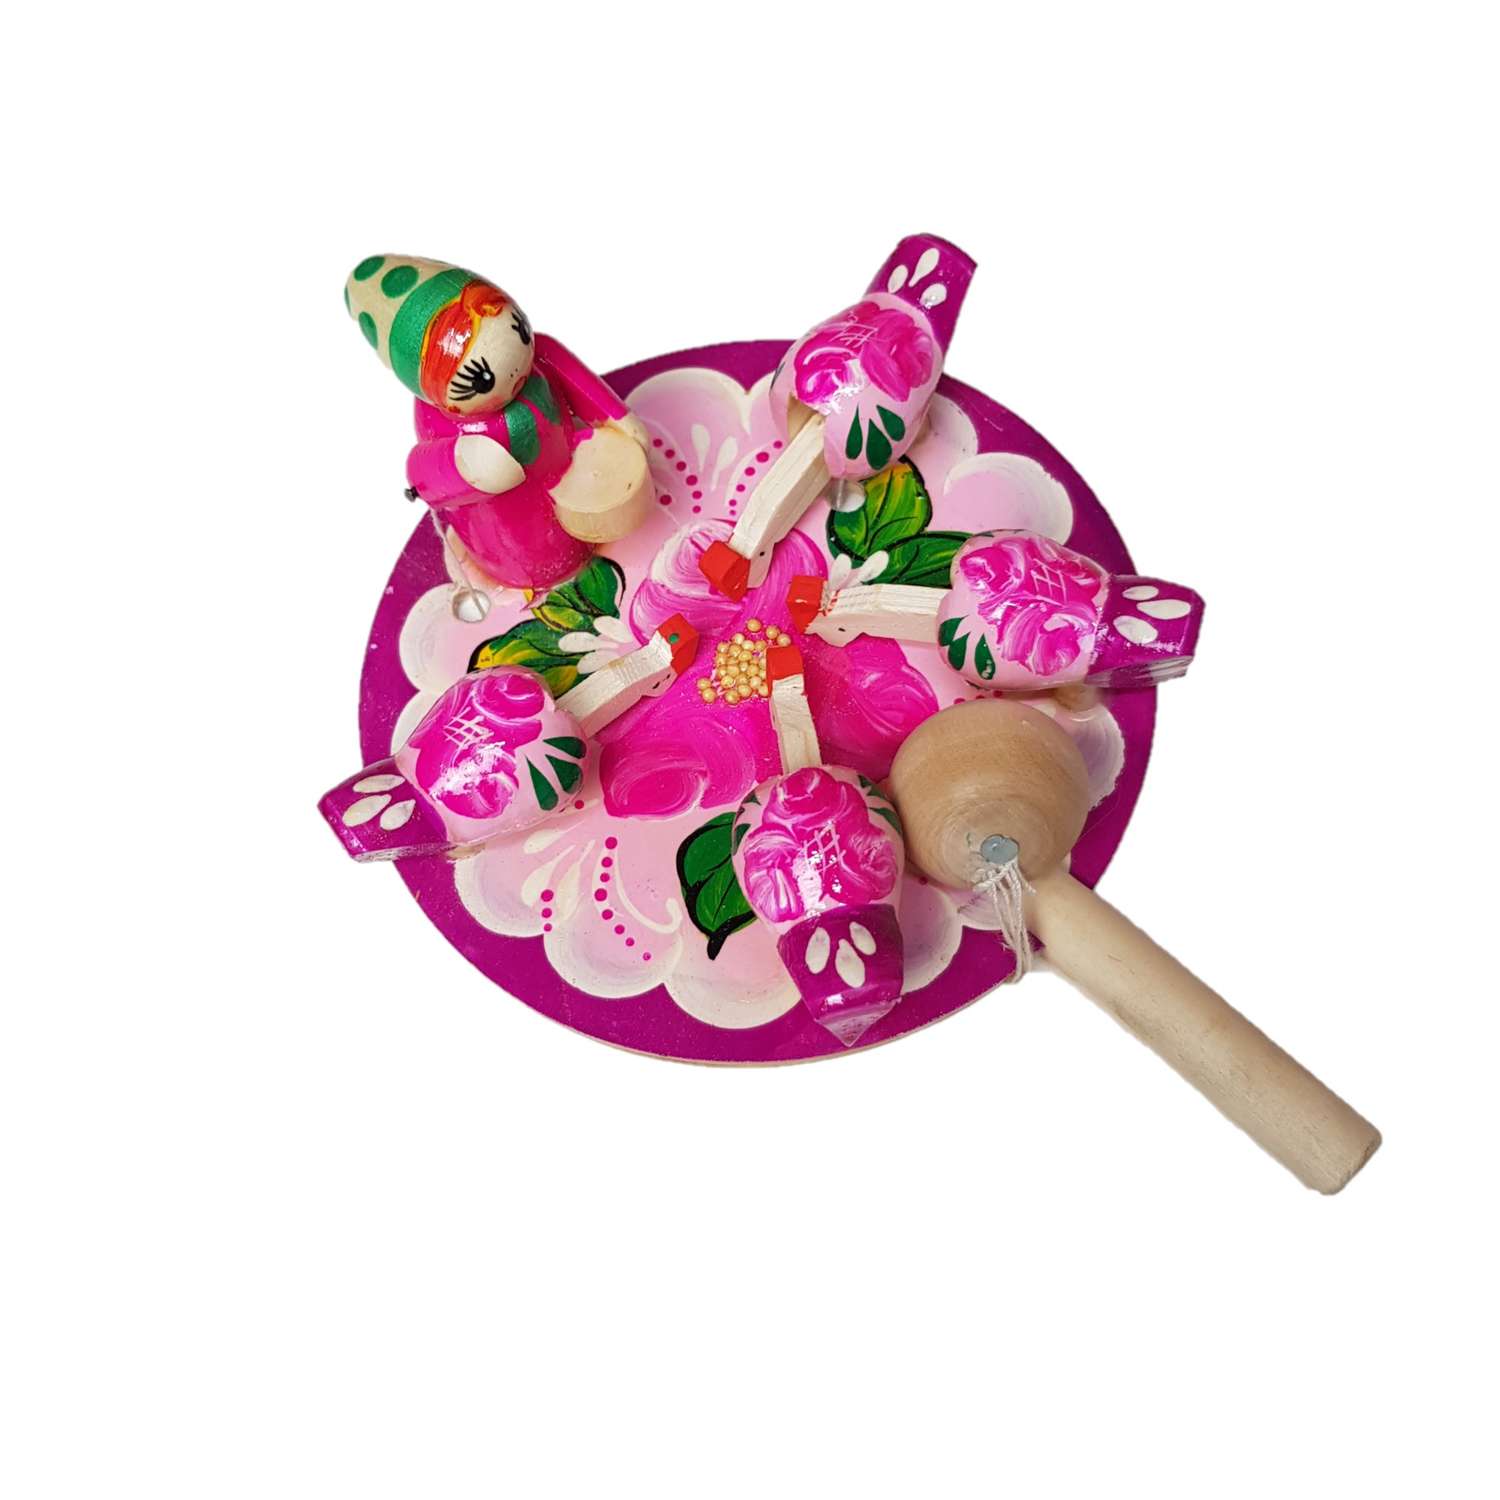 Богородская игрушка Нескучные игры Девочка кормит курочек цвет фуксия - фото 2